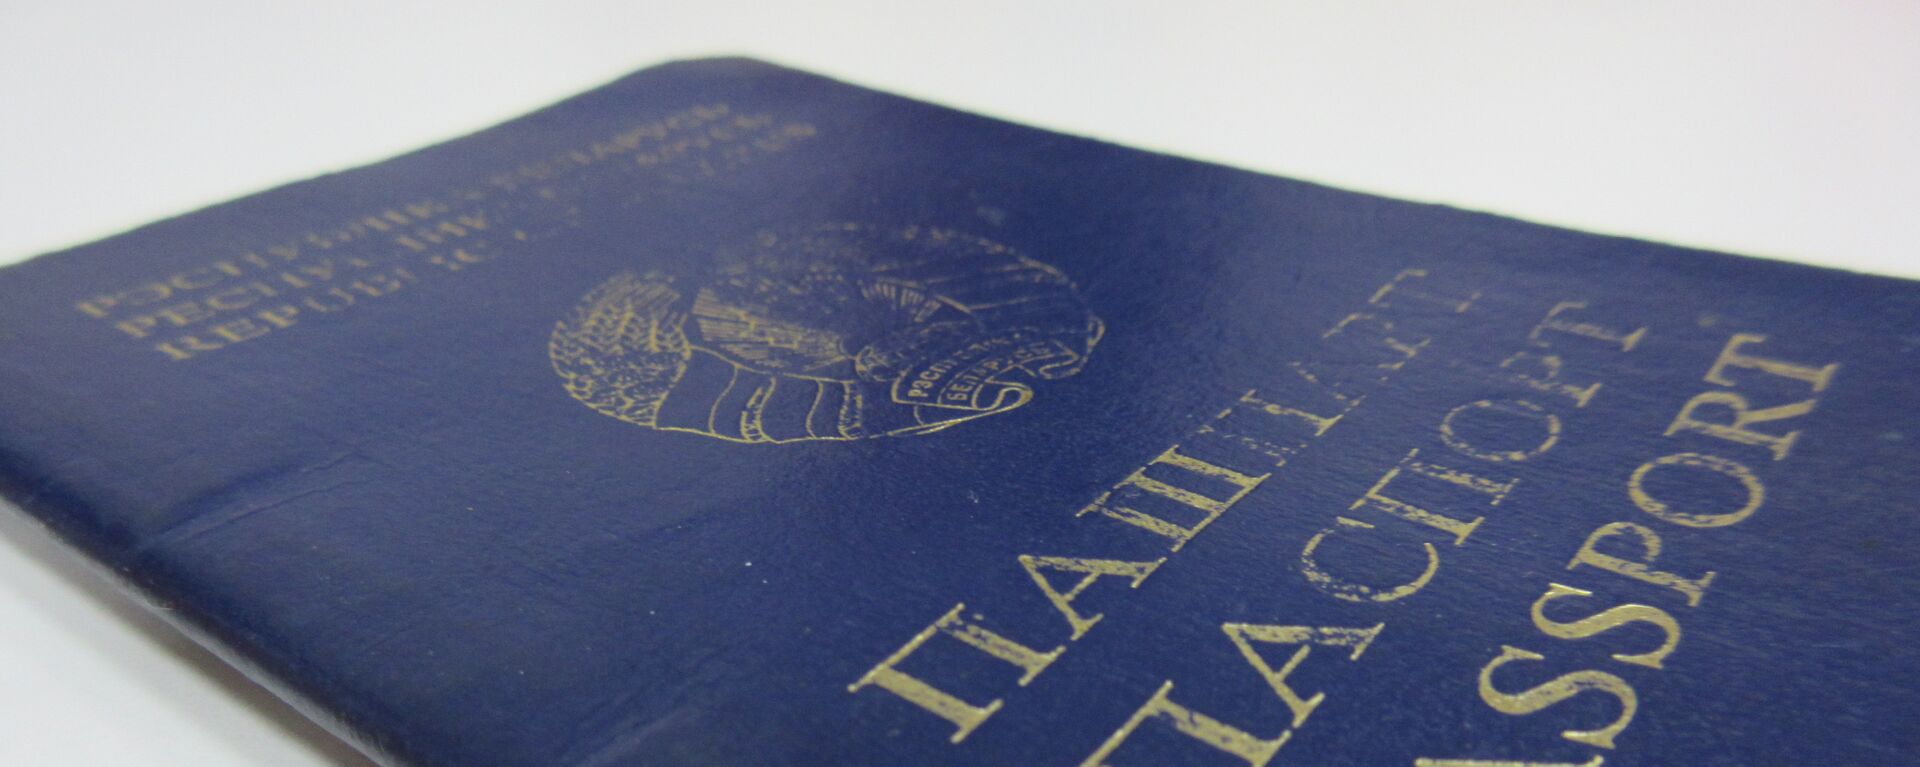 Белорусский паспорт - Sputnik Беларусь, 1920, 17.12.2020